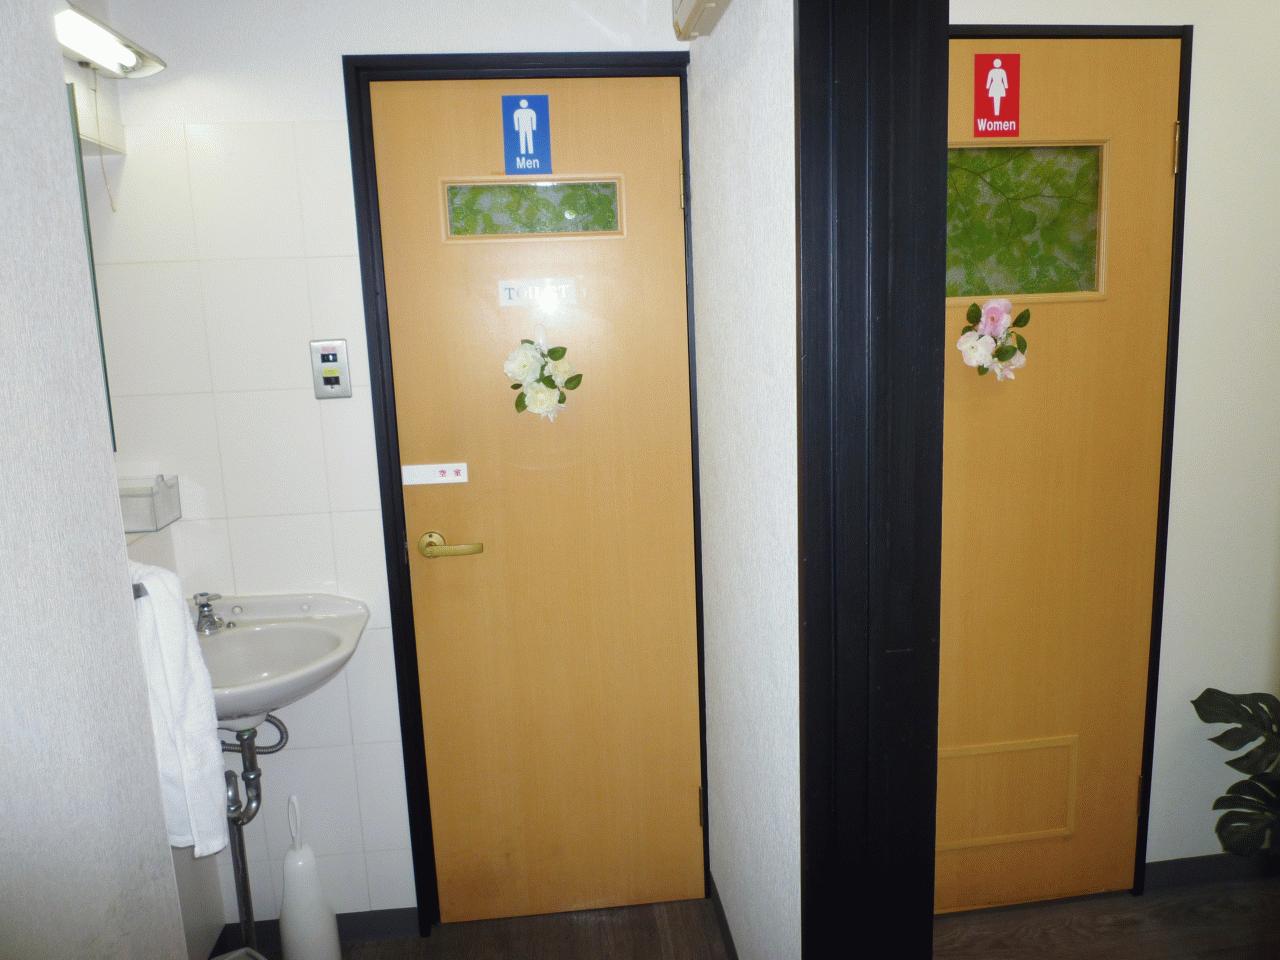 R3年に女性用トイレ改装しました♪ピカピカです♪